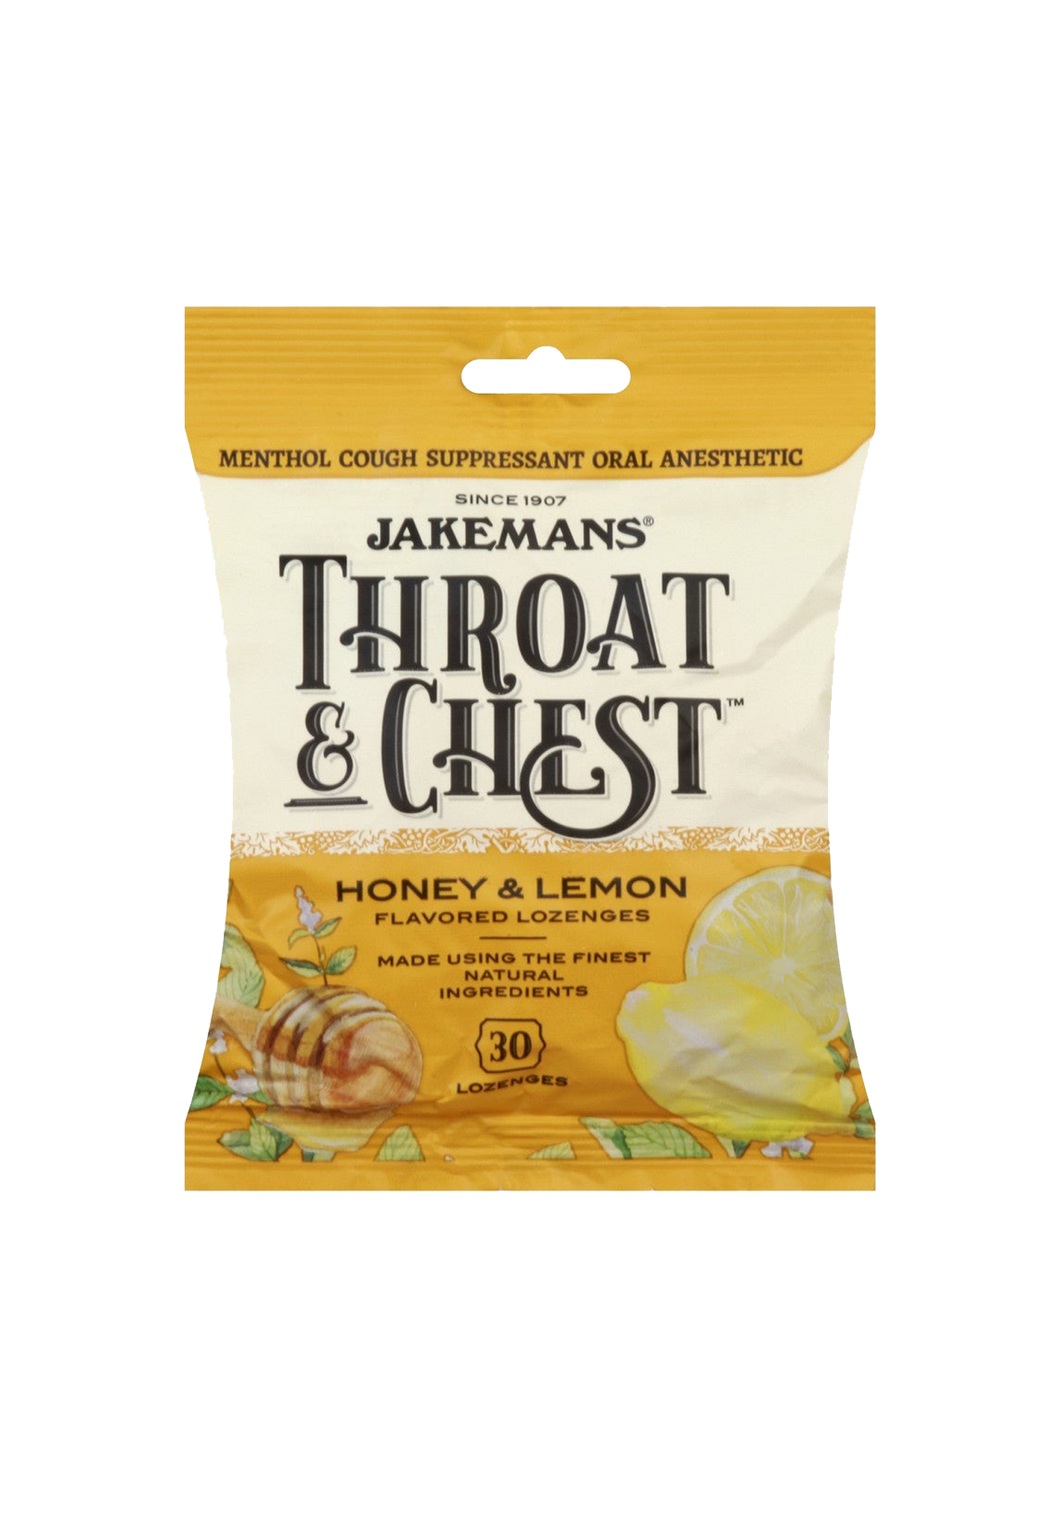 Jakemans Throat & Chest Honey & Lemon Flavored (30) Lozenges